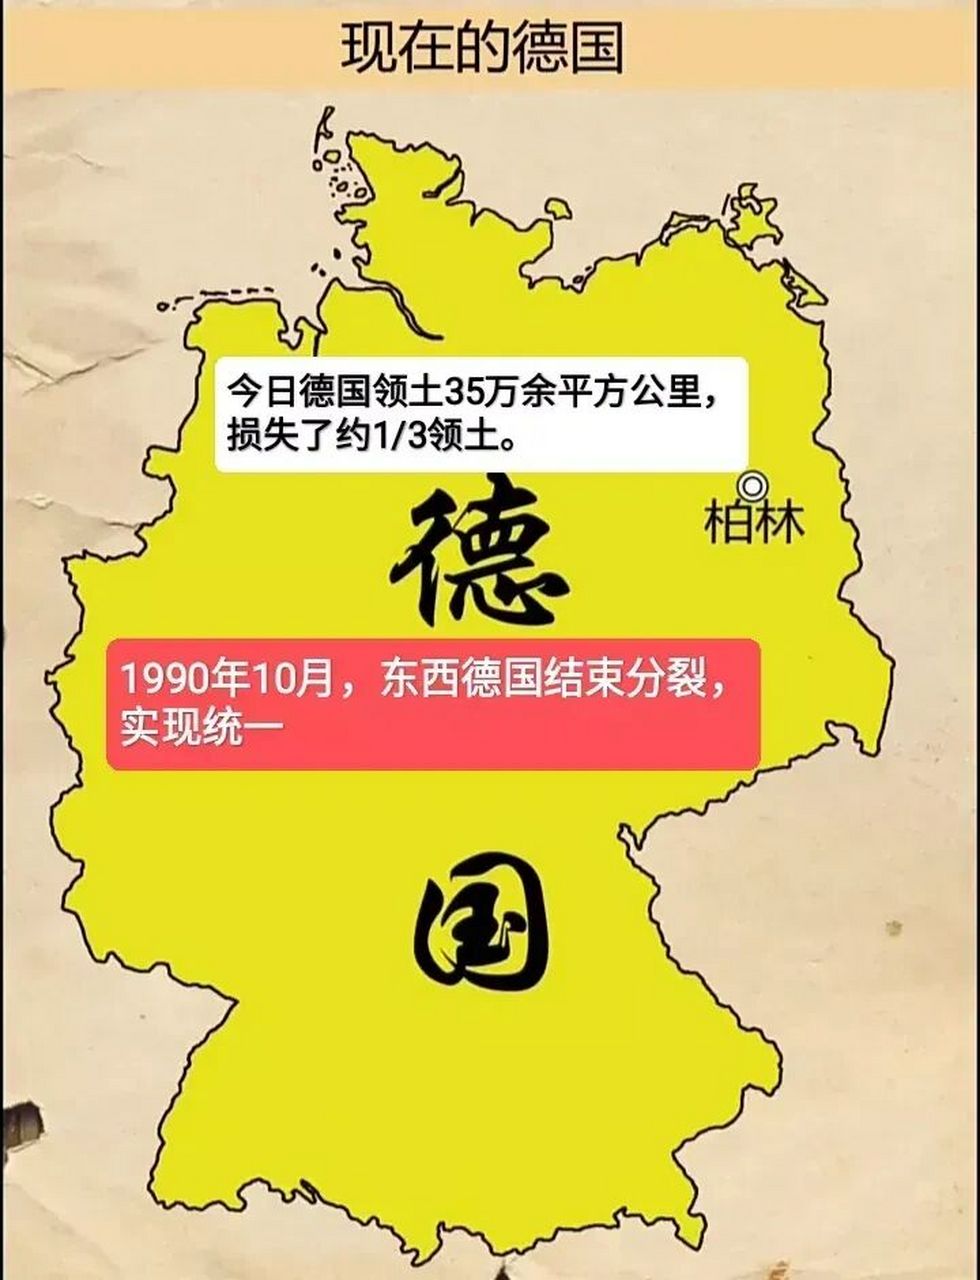 德国二战前后地图对比 第二次工业革命发动机,诞生康德,哥德巴赫